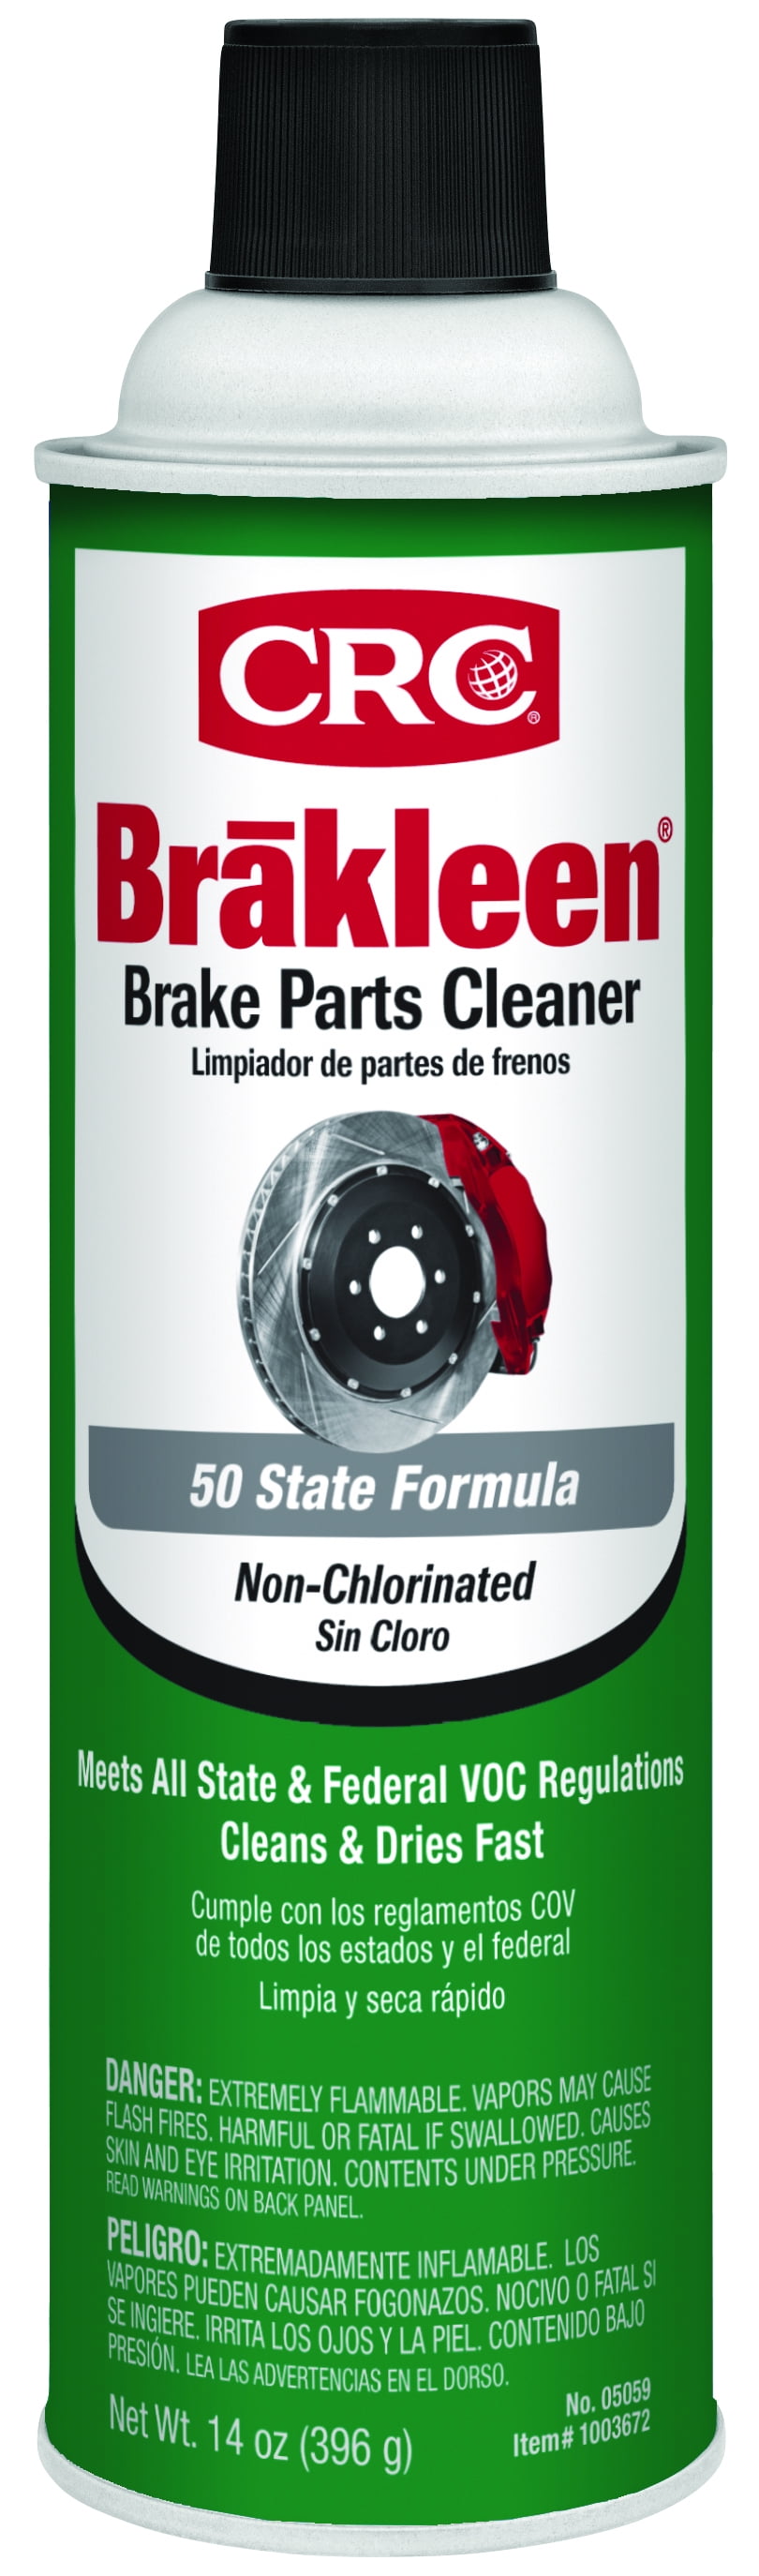 CRC Brakleen Low VOC Brake Parts Cleaner